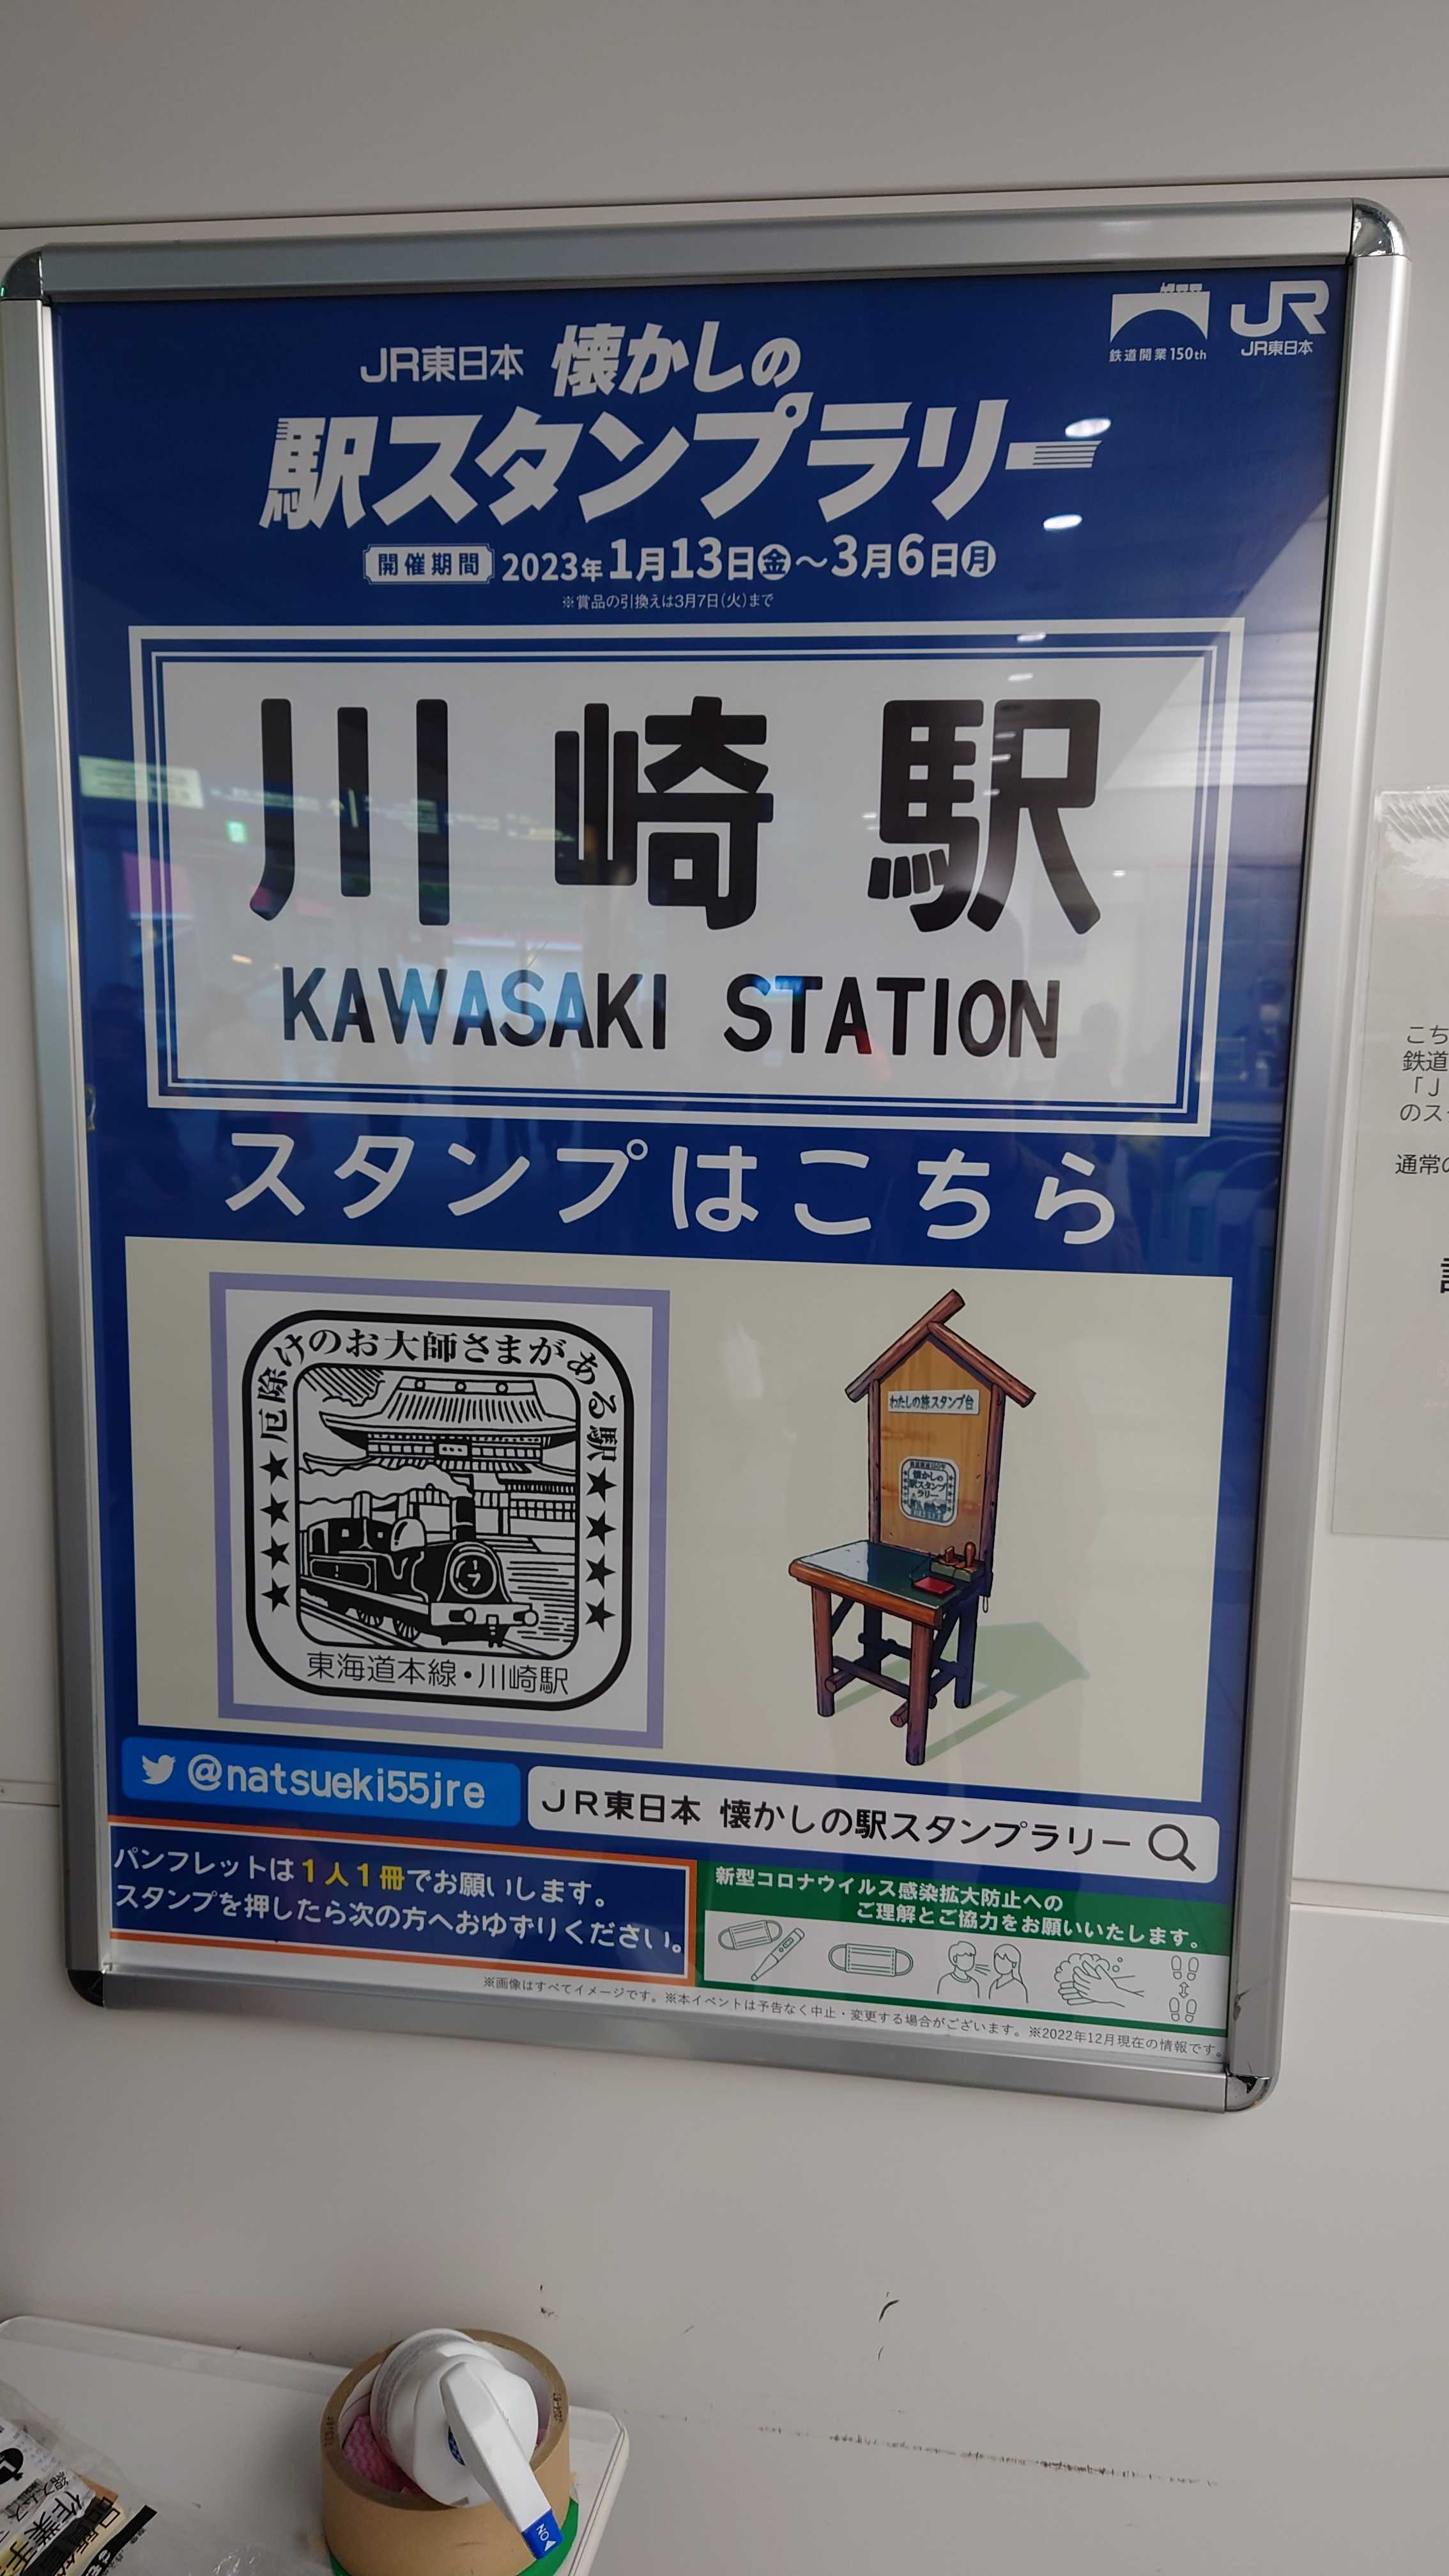 JR東日本 懐かしの駅スタンプラリー 2023 参加 | おっさんの優待投資